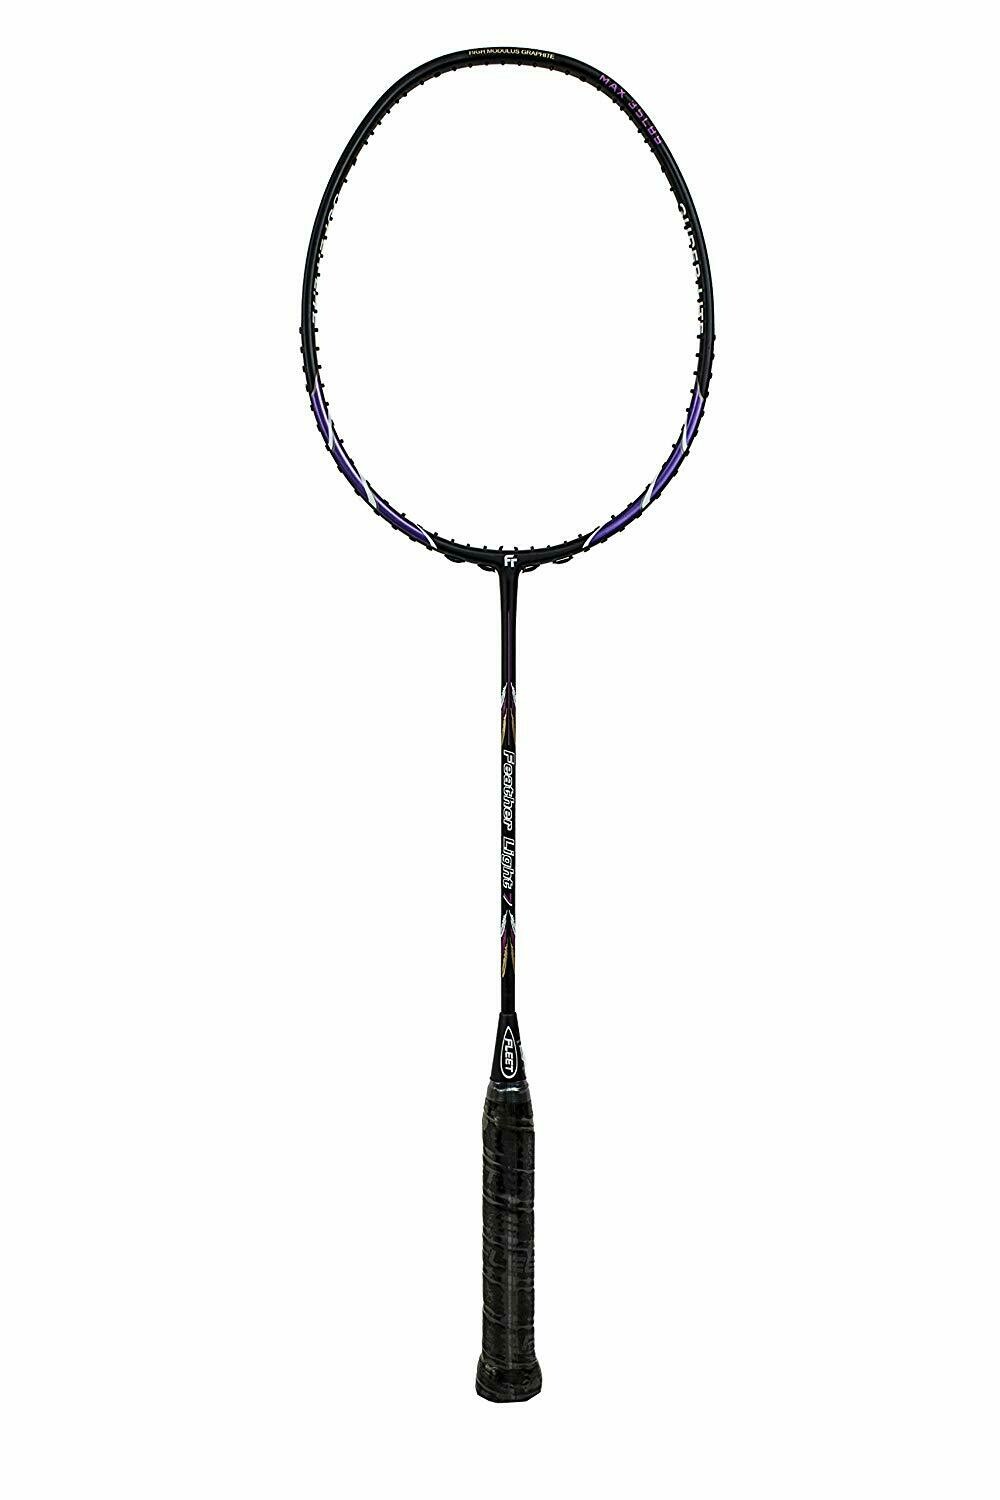 Fleet  Feather Light 7 Badminton Racquet